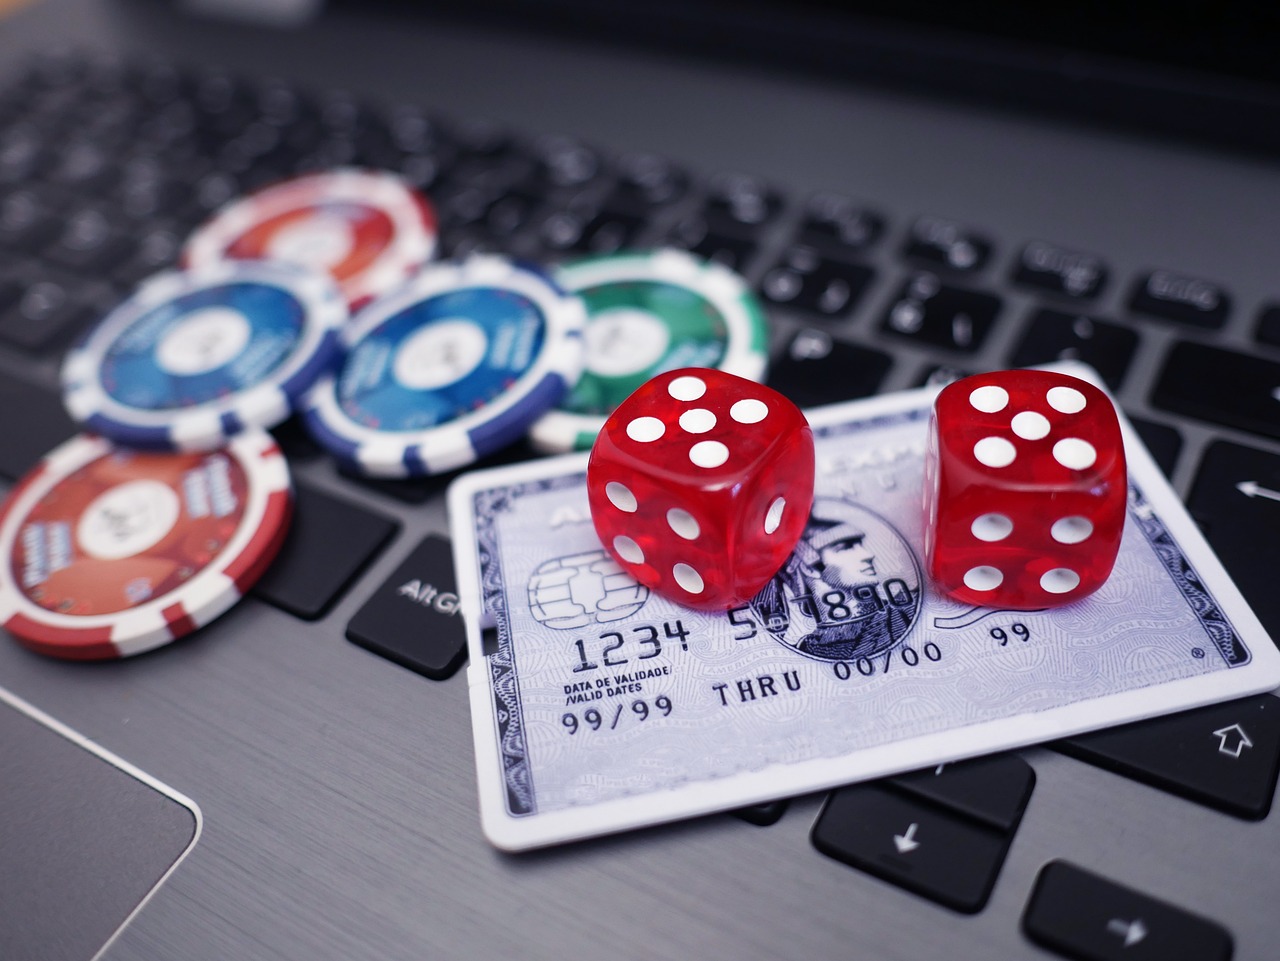 Portaali kirjeldatakse populaarses artiklis kasiino.